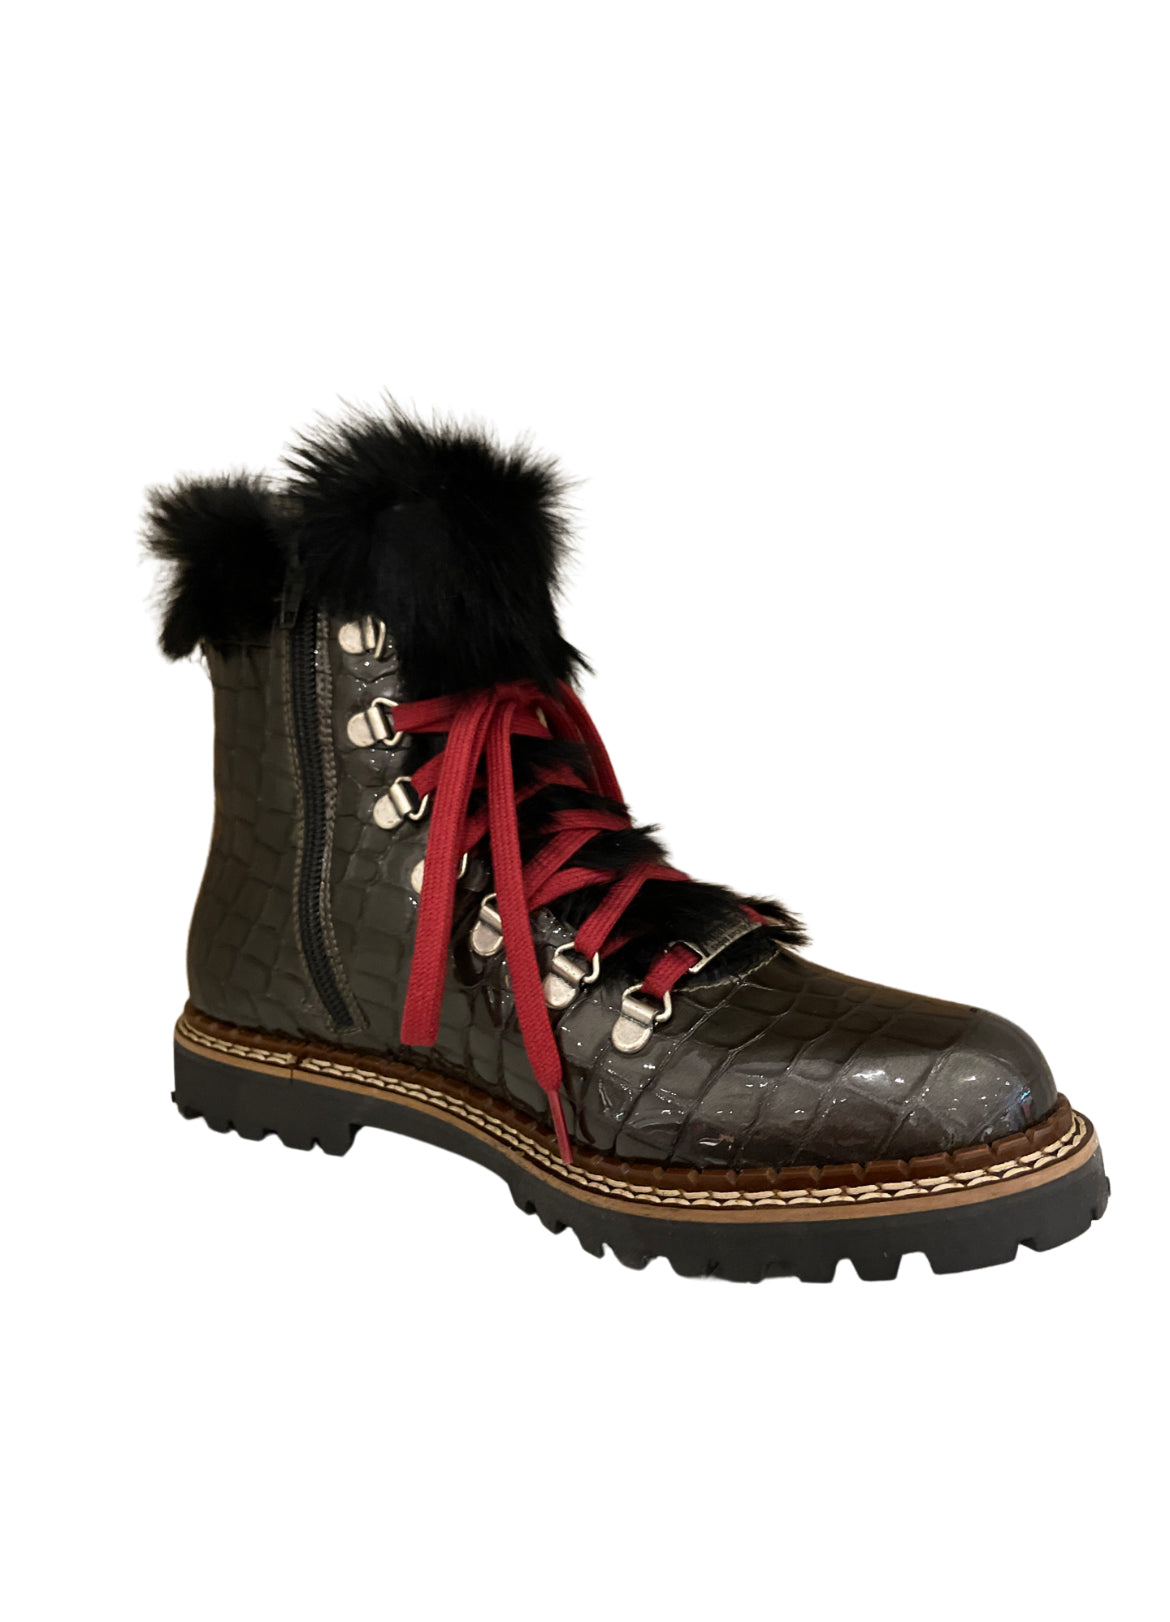 Ammann Splugen Black Fur Trim Croc Leather Ankle Boots